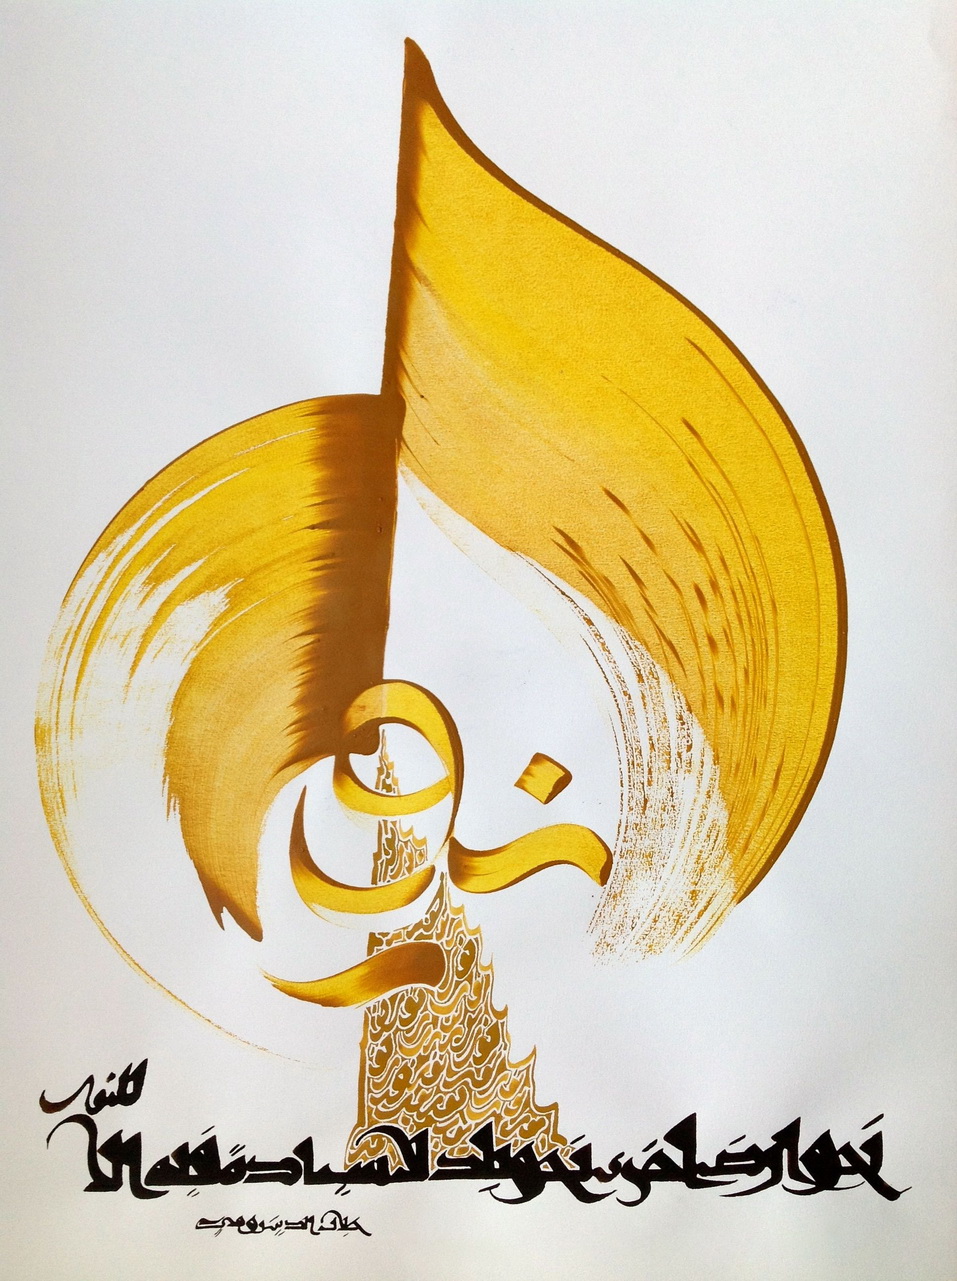 Islamische Kunst Arabische Kalligraphie HM 16 Ölgemälde